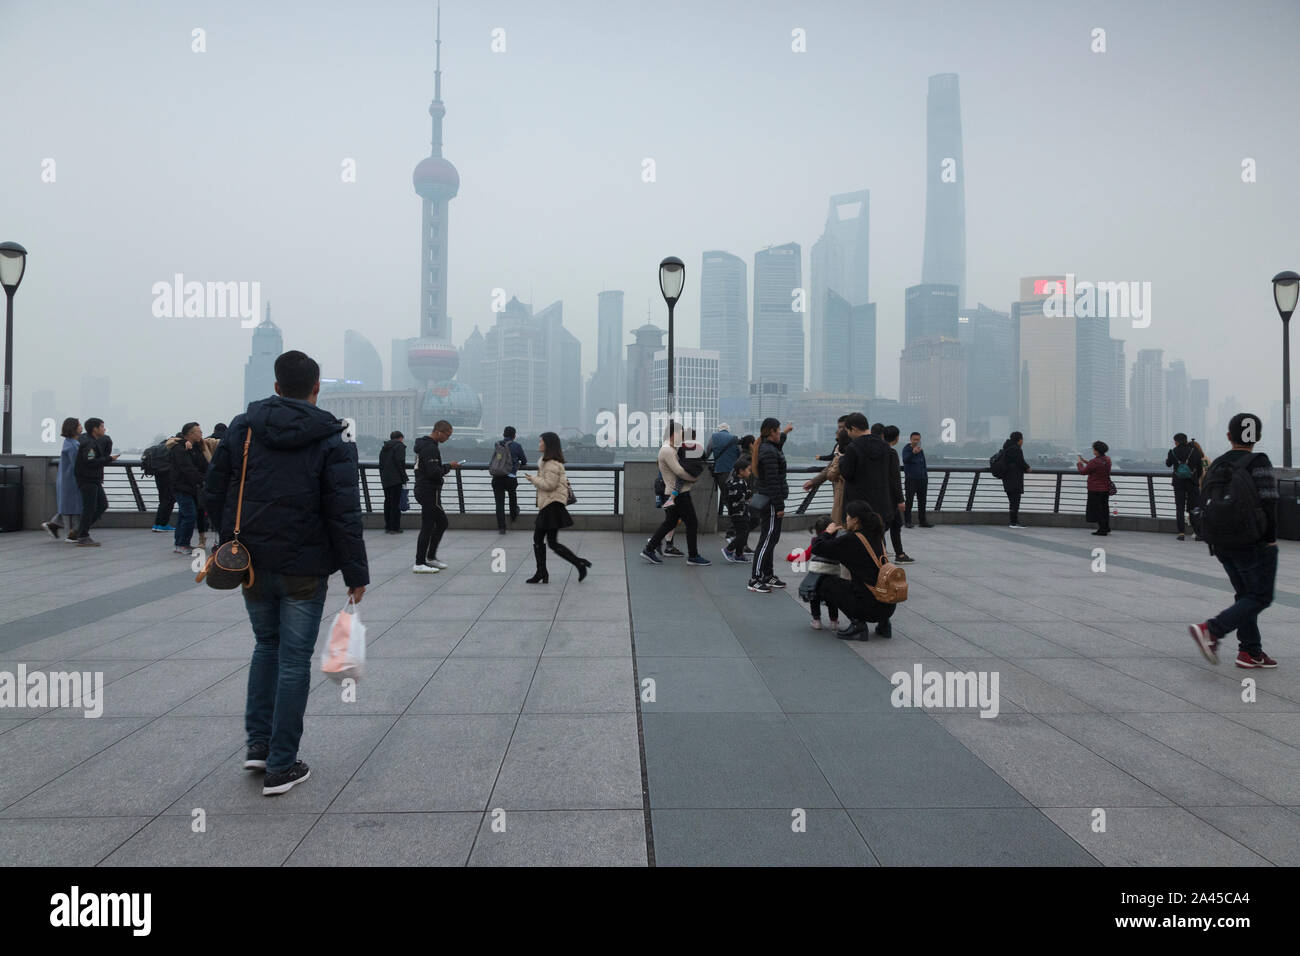 28. November 2018: Shanghai, China - ein typischer Tag auf den Bund, in China, in Richtung Stadtteil Pudong. Menschen Sightseeing in der dicken Luft. Stockfoto